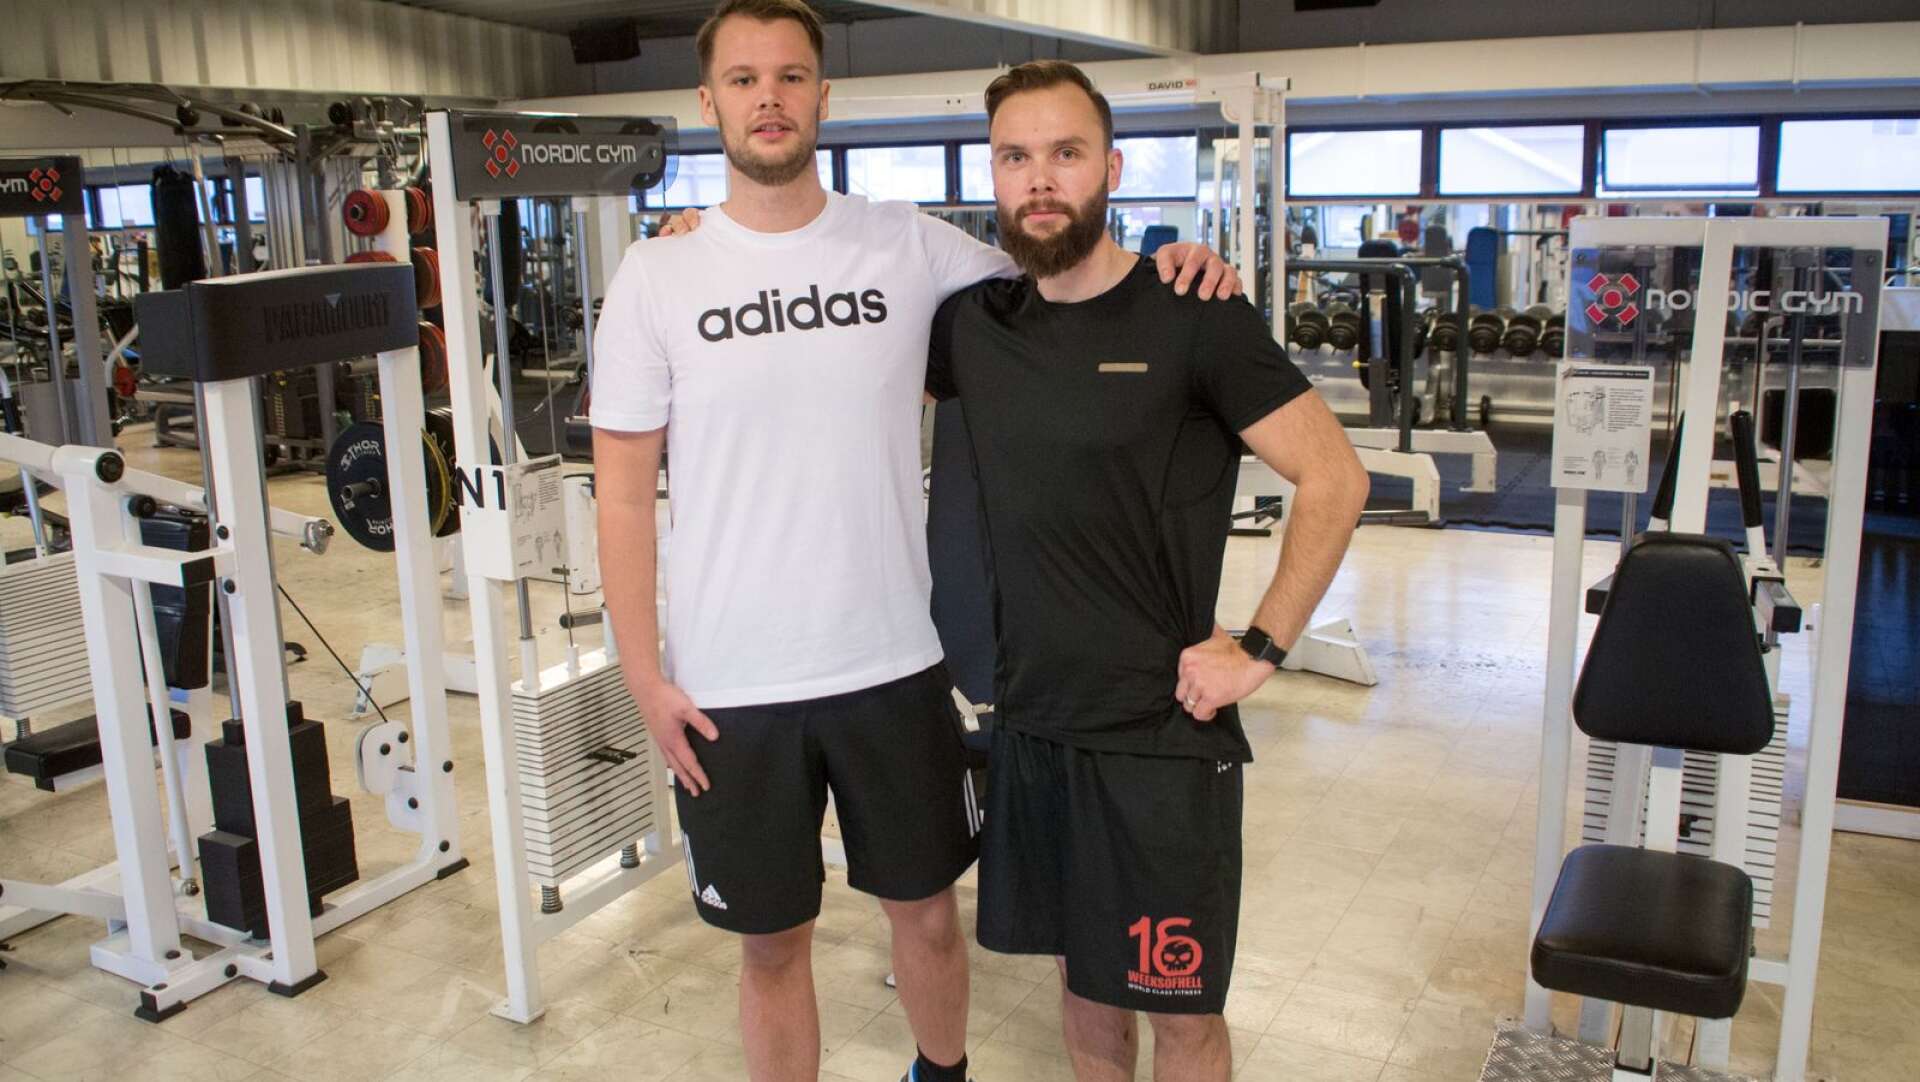 Fredrik Narvelid och Petter Gustavsson har peppat varandra för att klara av 84 gympass, 112 powerwalks och en snål kost under 112 dagar.  